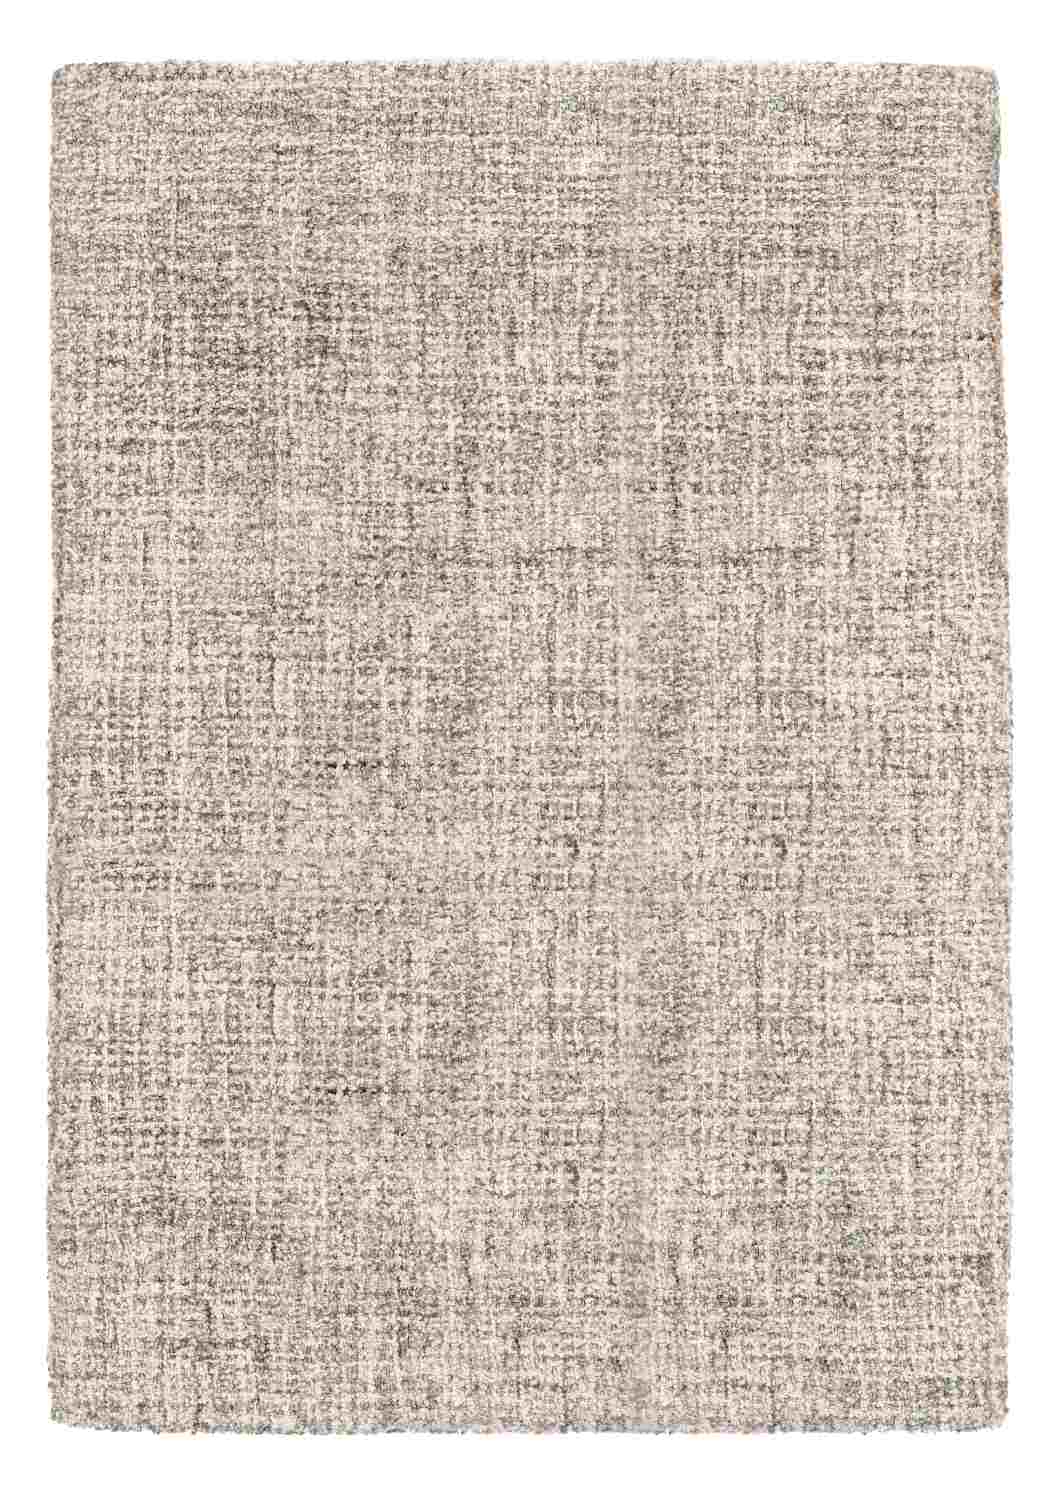 Der Teppich Hansi überzeugt mit seinem klassischen Design. Gefertigt wurde die Vorderseite aus 70% Polyester und 30% Wolle, die Rückseite ist aus Baumwolle. Der Teppich besitzt eine Beige Farbton und die Maße von 160x230 cm.